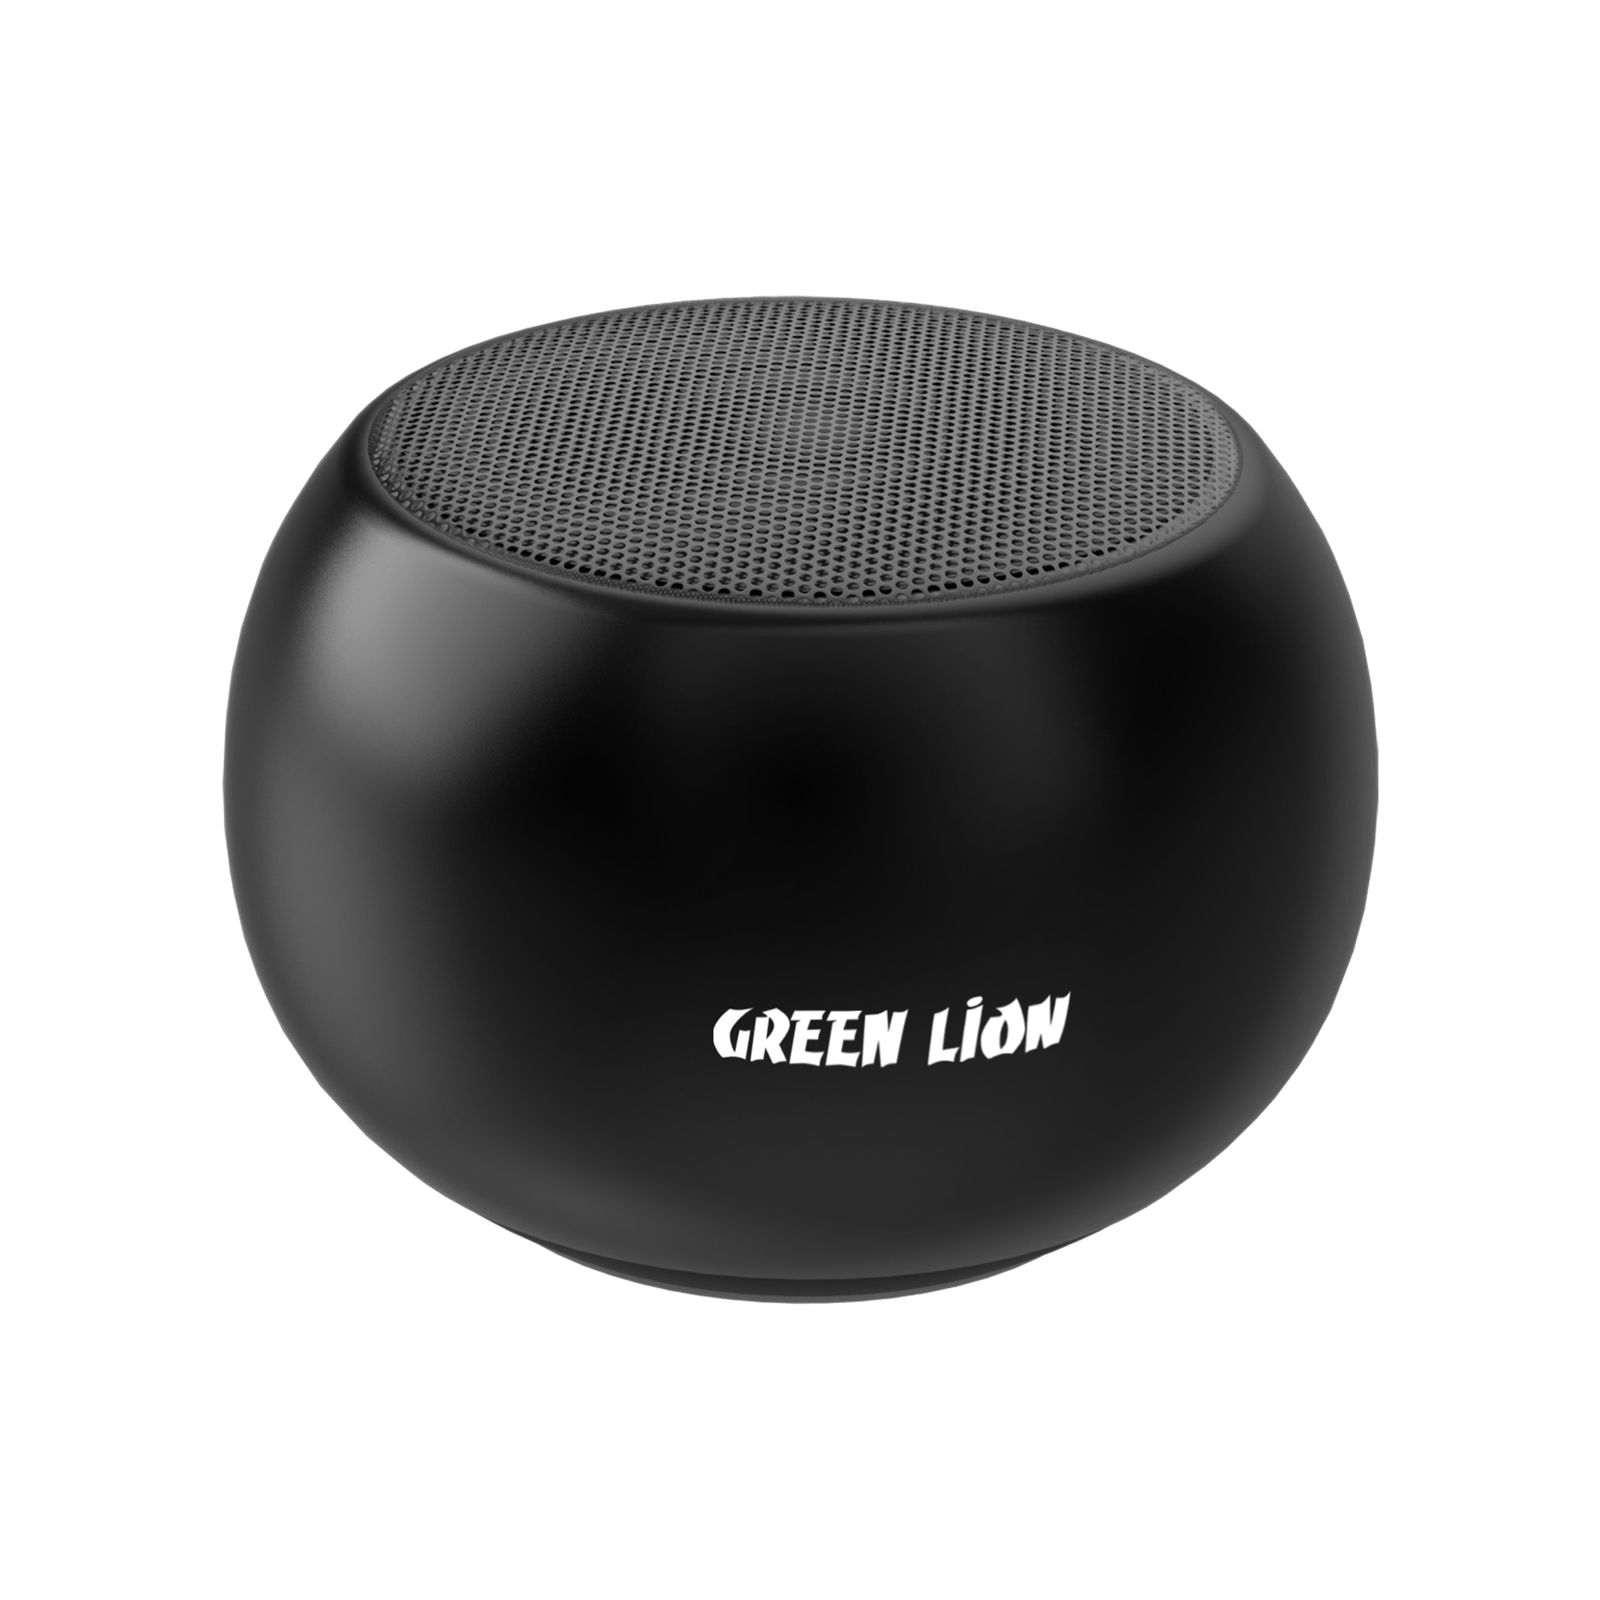 سبيكر بلوتوث موديل M3 الصغير لون أسود | Green Soundcore Portable Bluetooth Speaker - 1}